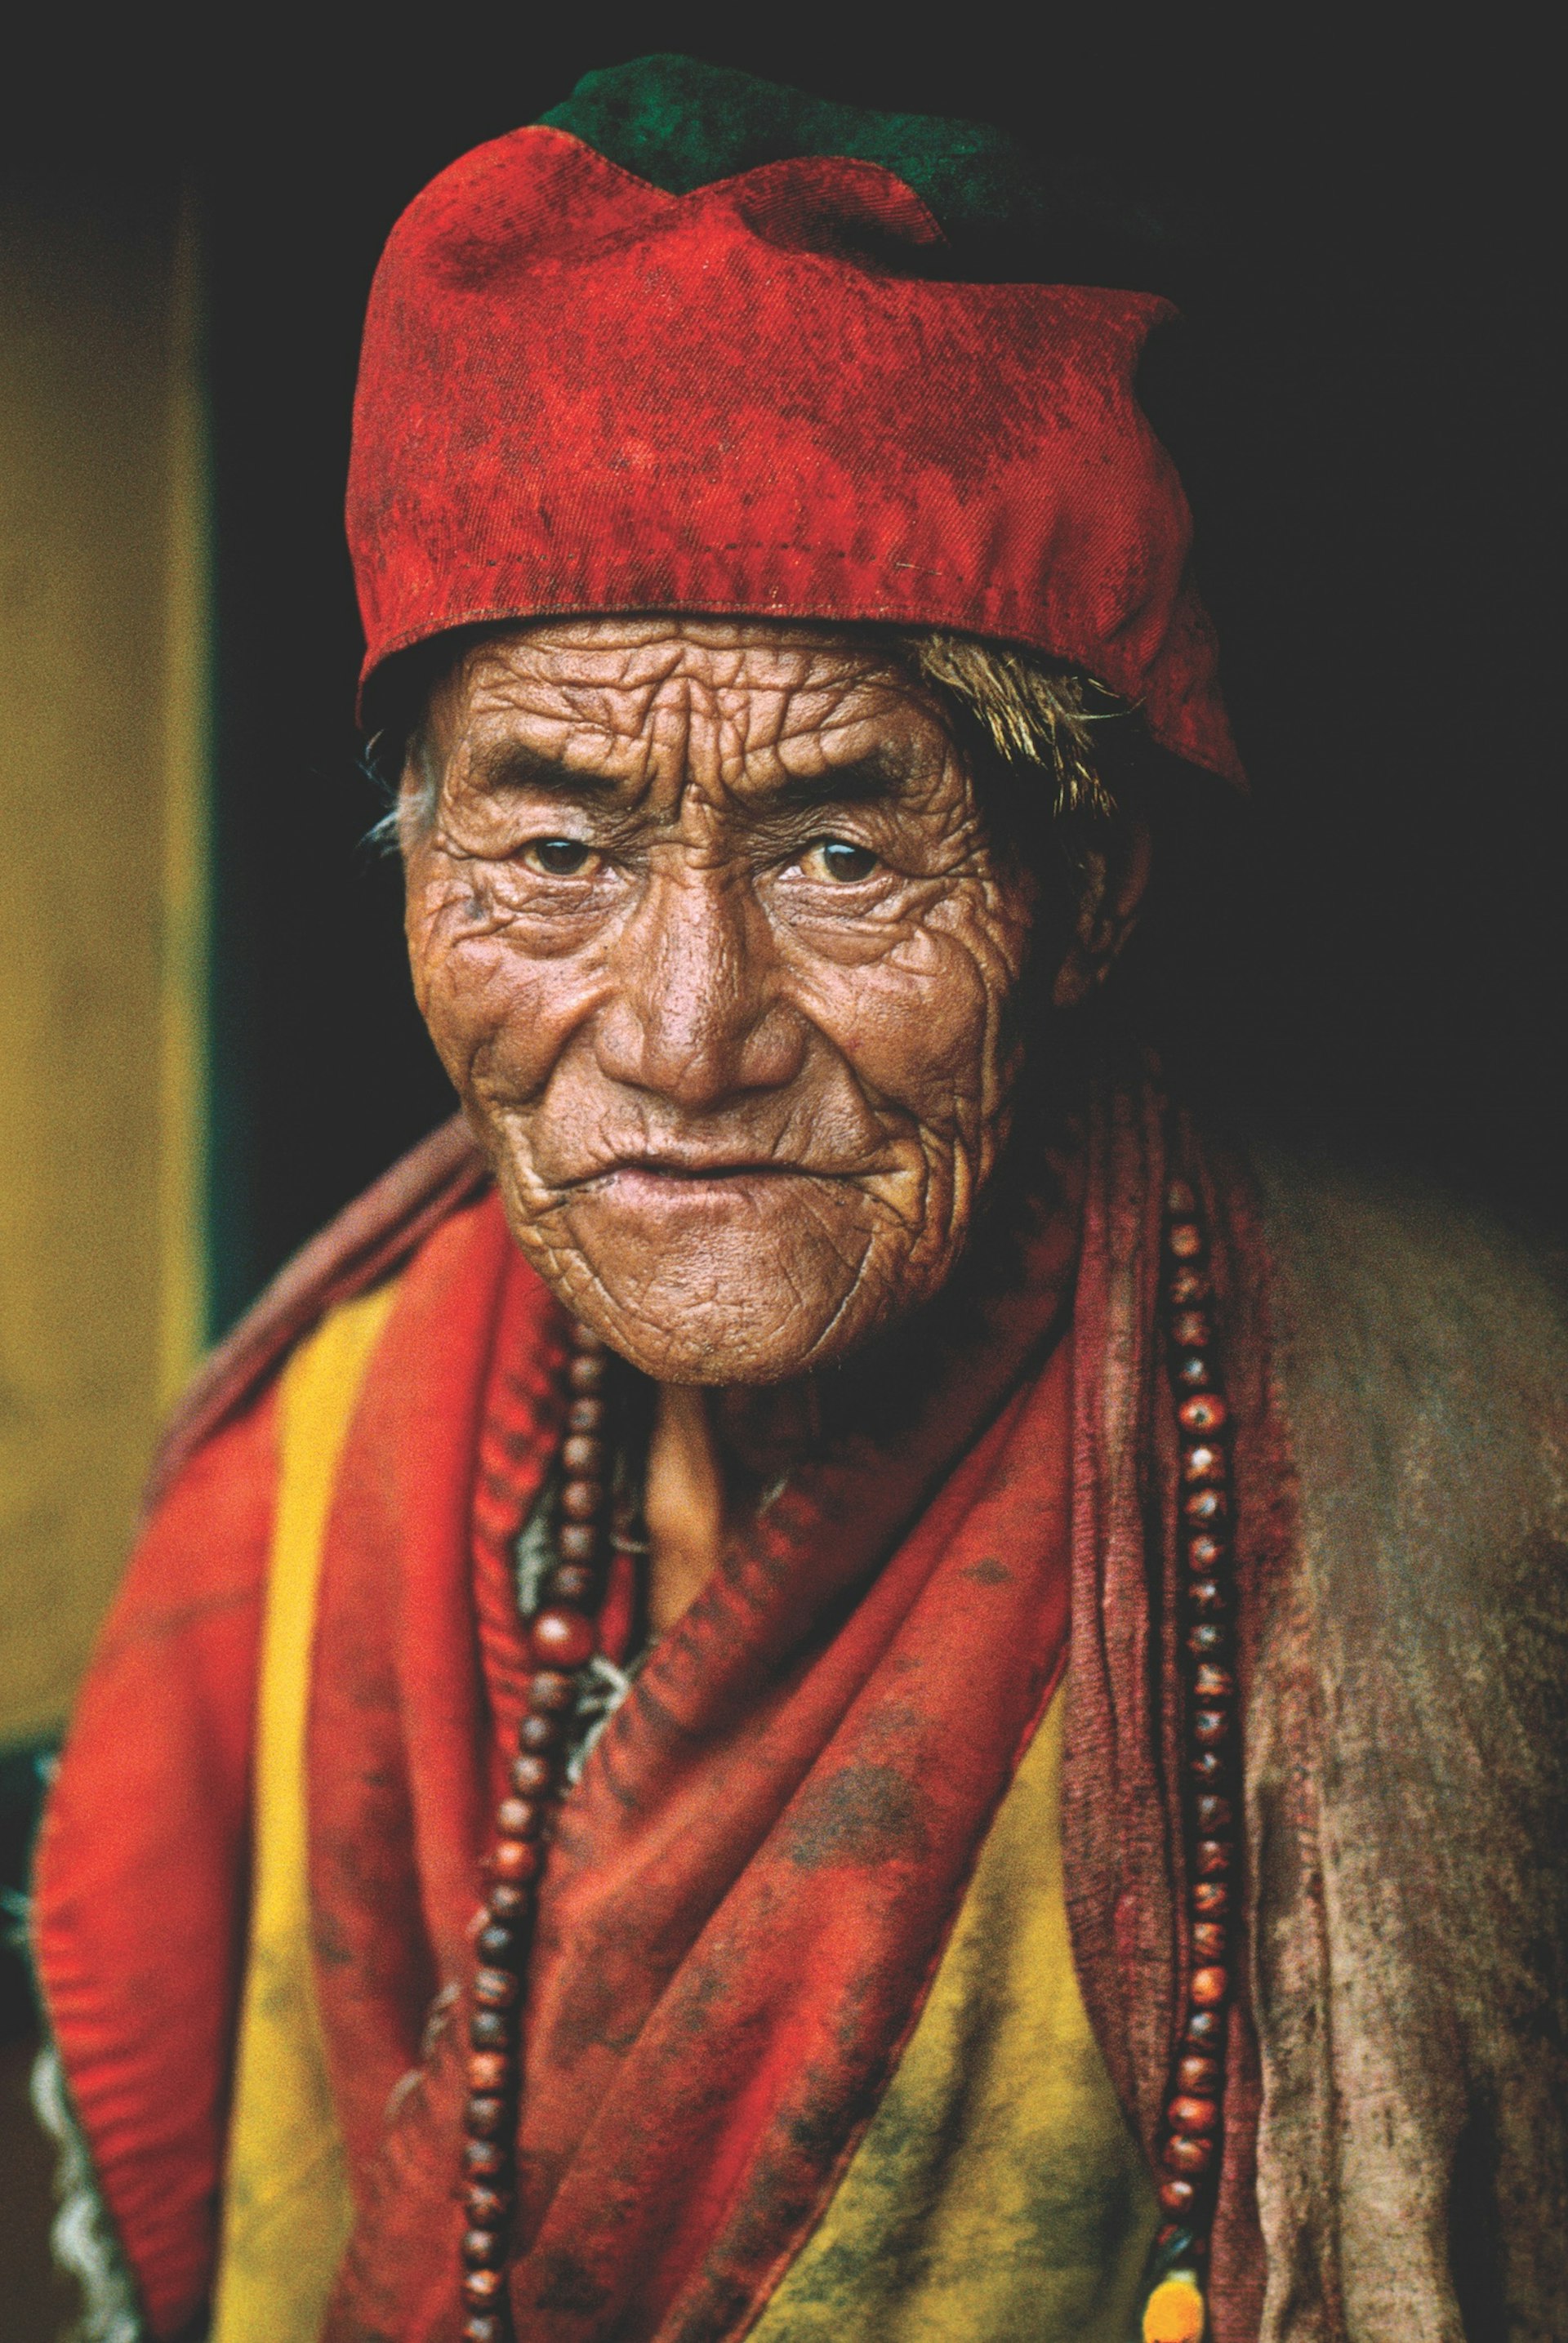 Monk, Kham, Tibet, 1999.